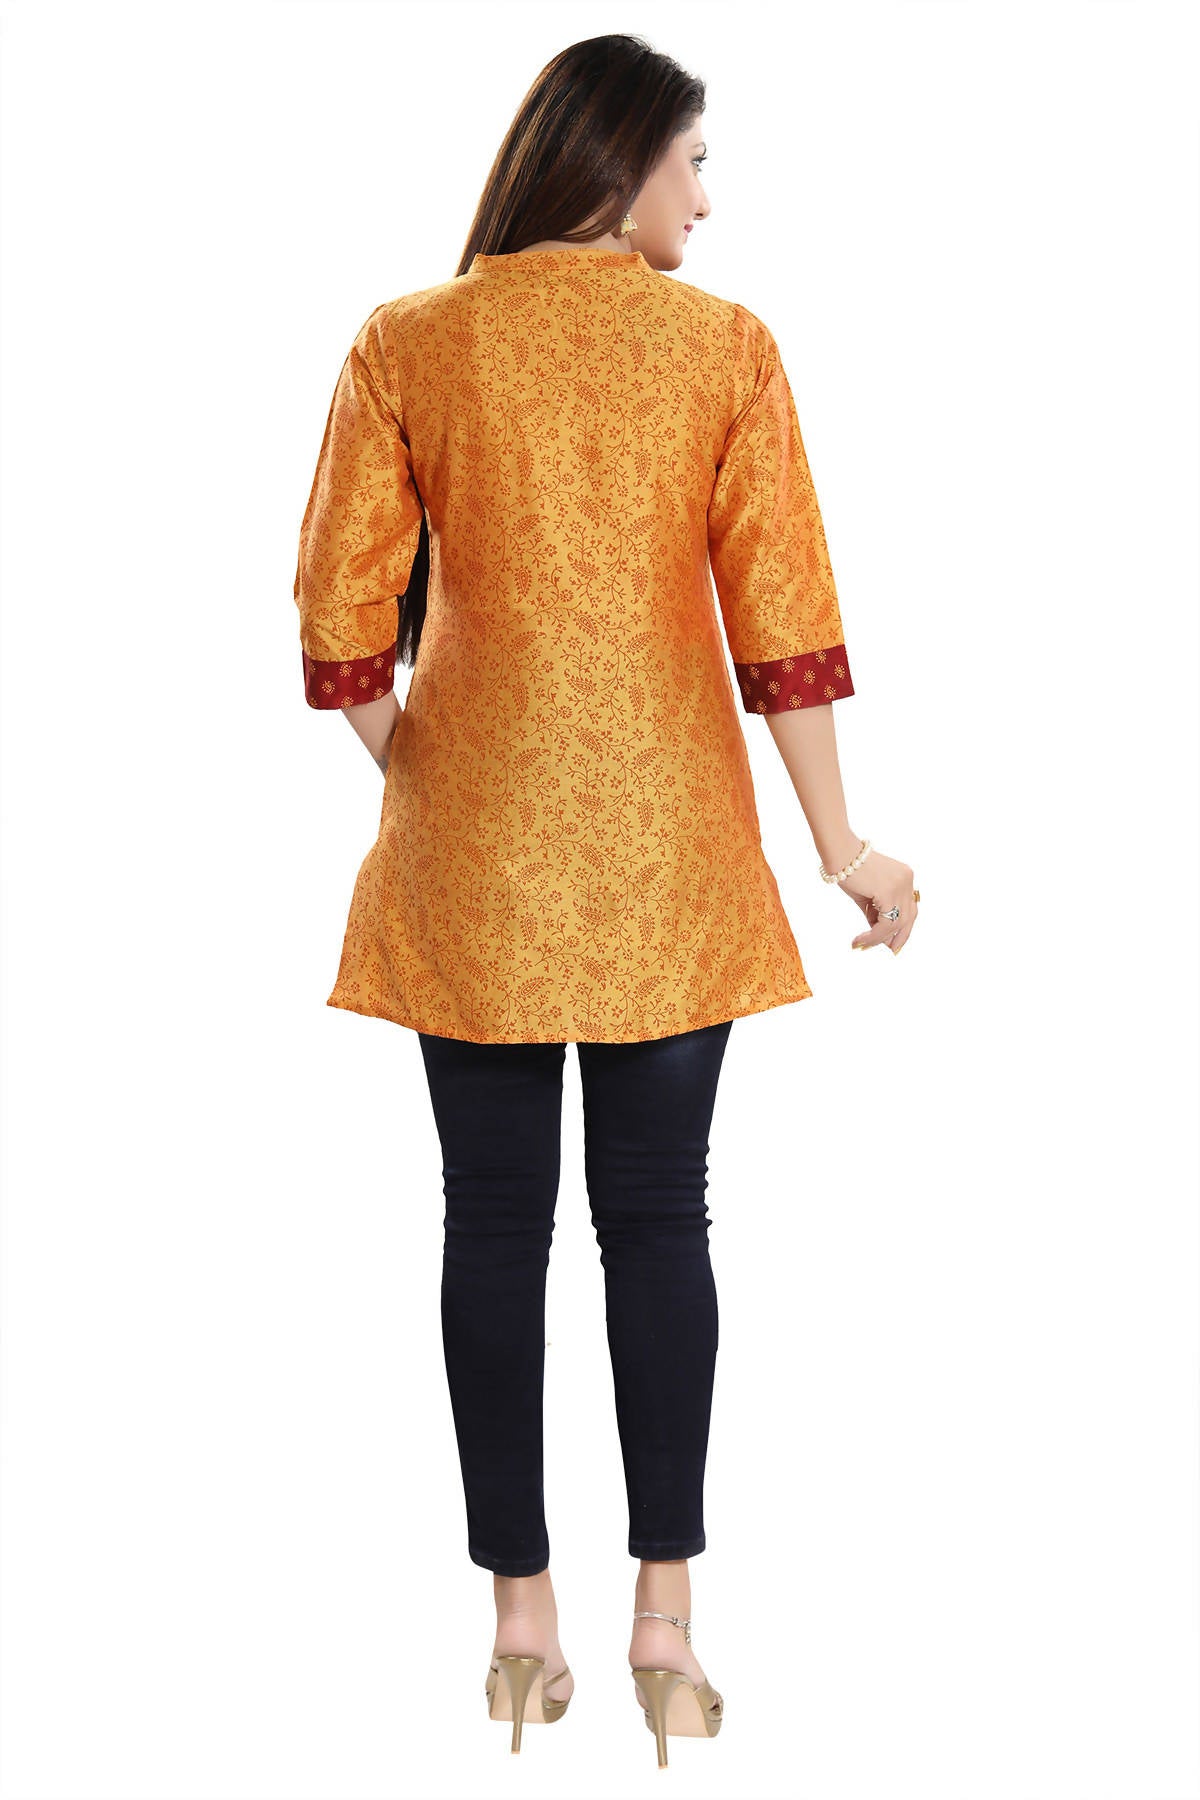 Snehal Creations Luxurious Fine Fire Gold Cotton Silk Short Tunic - Distacart